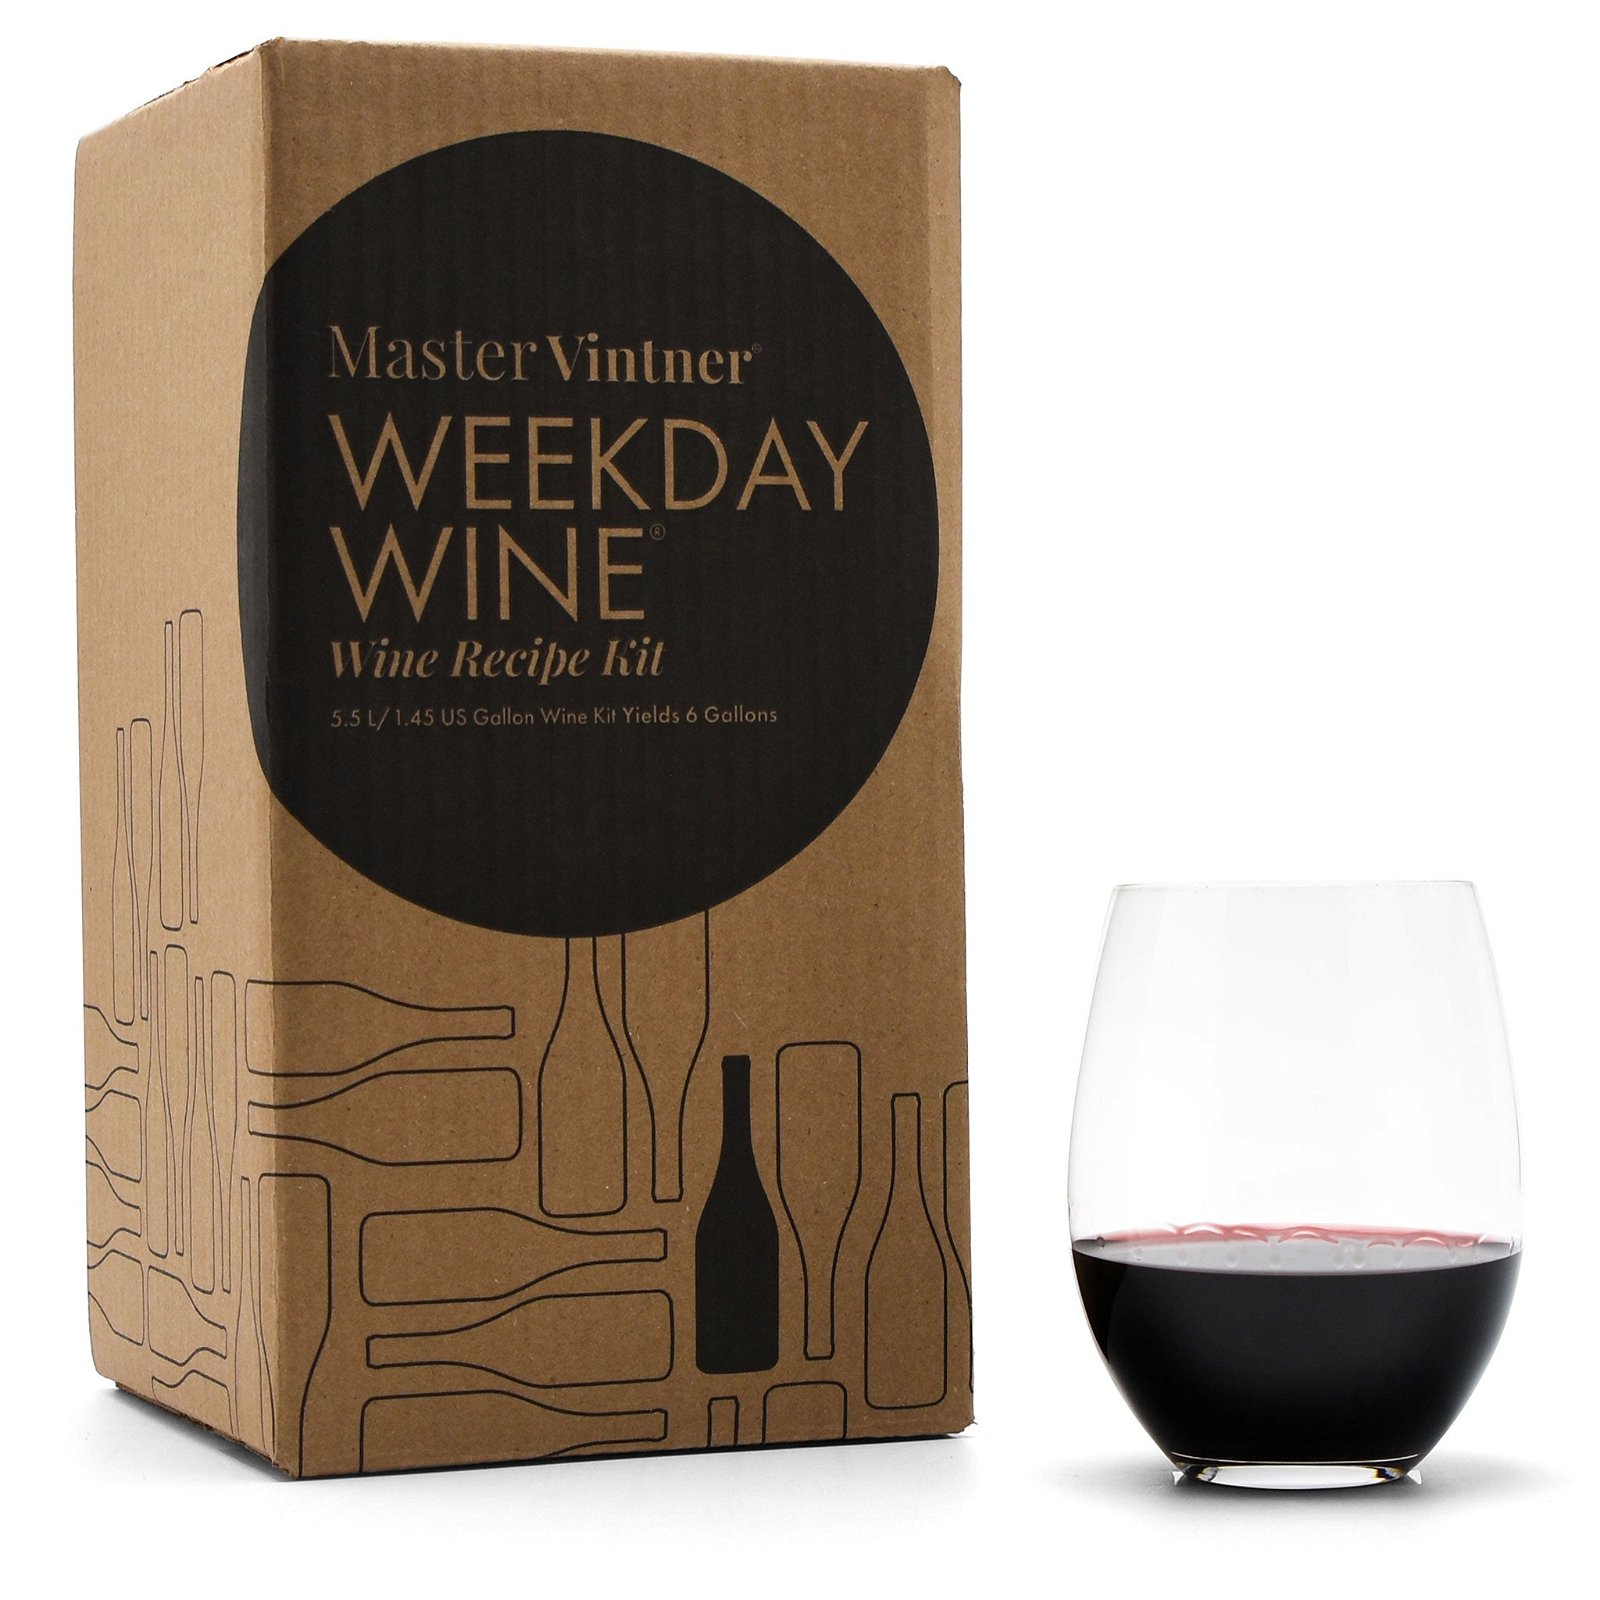 Master Vintner Weekday Wine Wine Recipe Kits